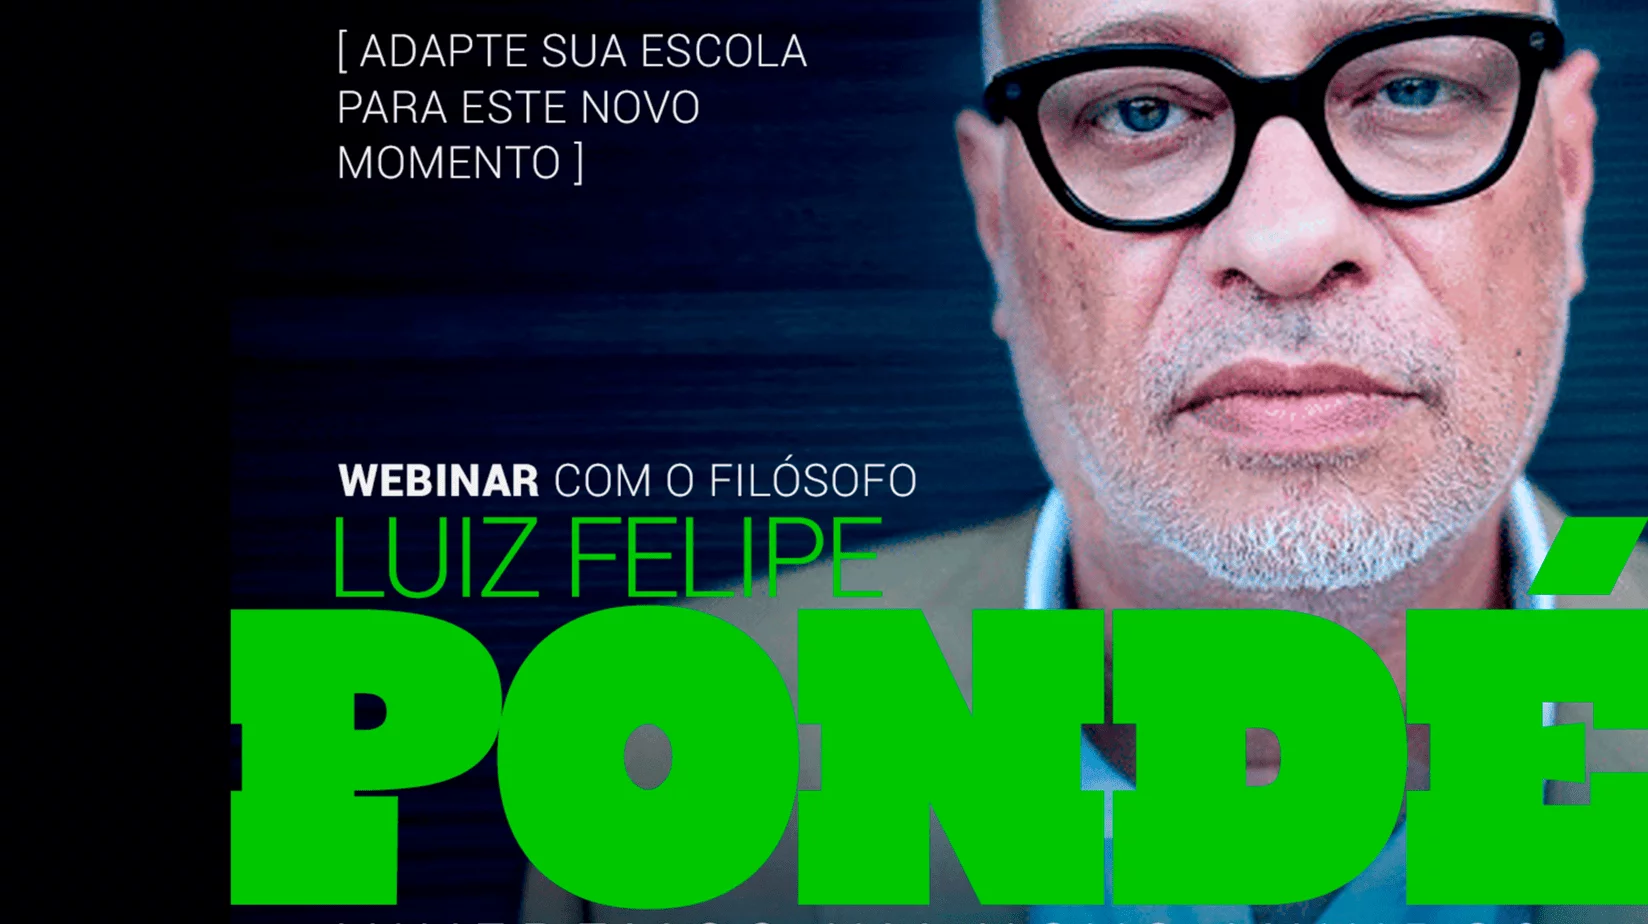 Webinar com Luiz Felipe Pondé sobre escolas